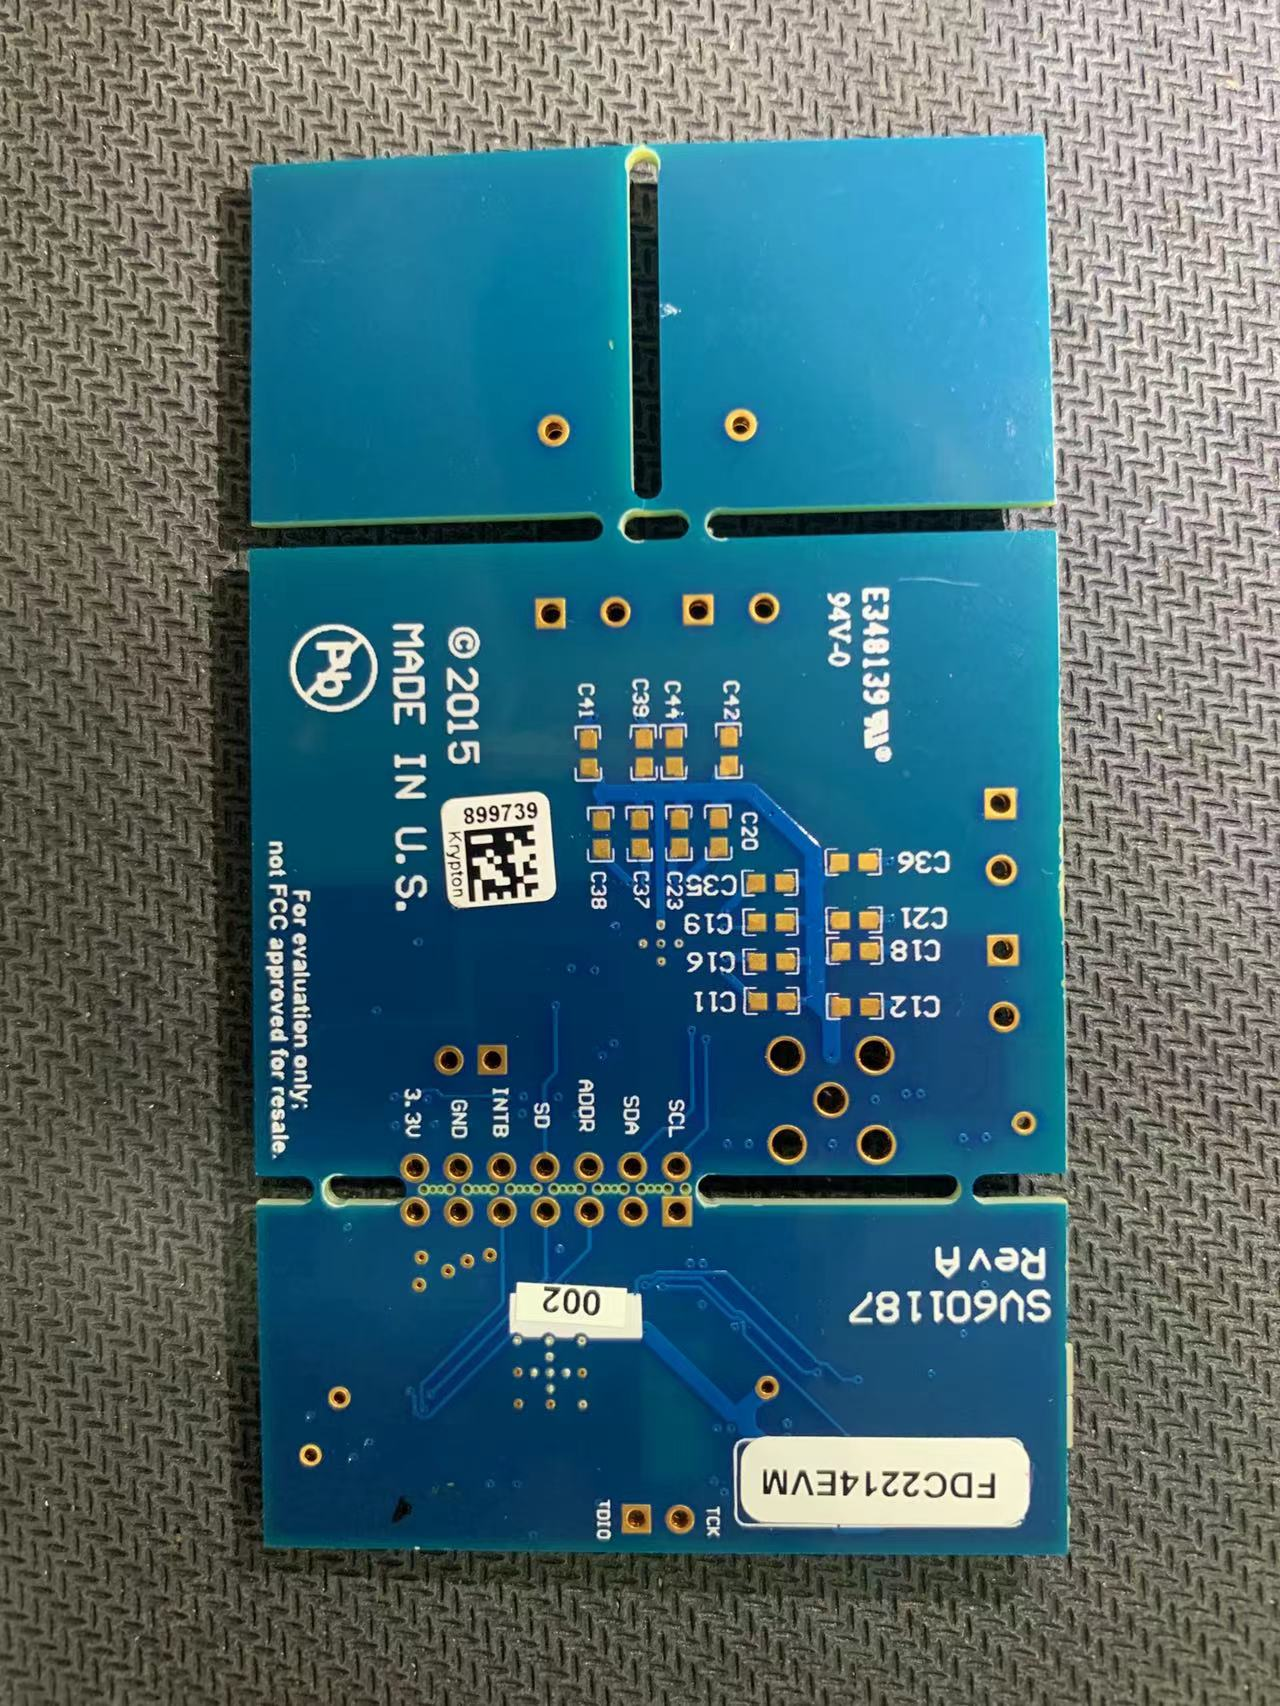 FDC2214EVM 具有两个电容传感器的 FDC2214 评估模块